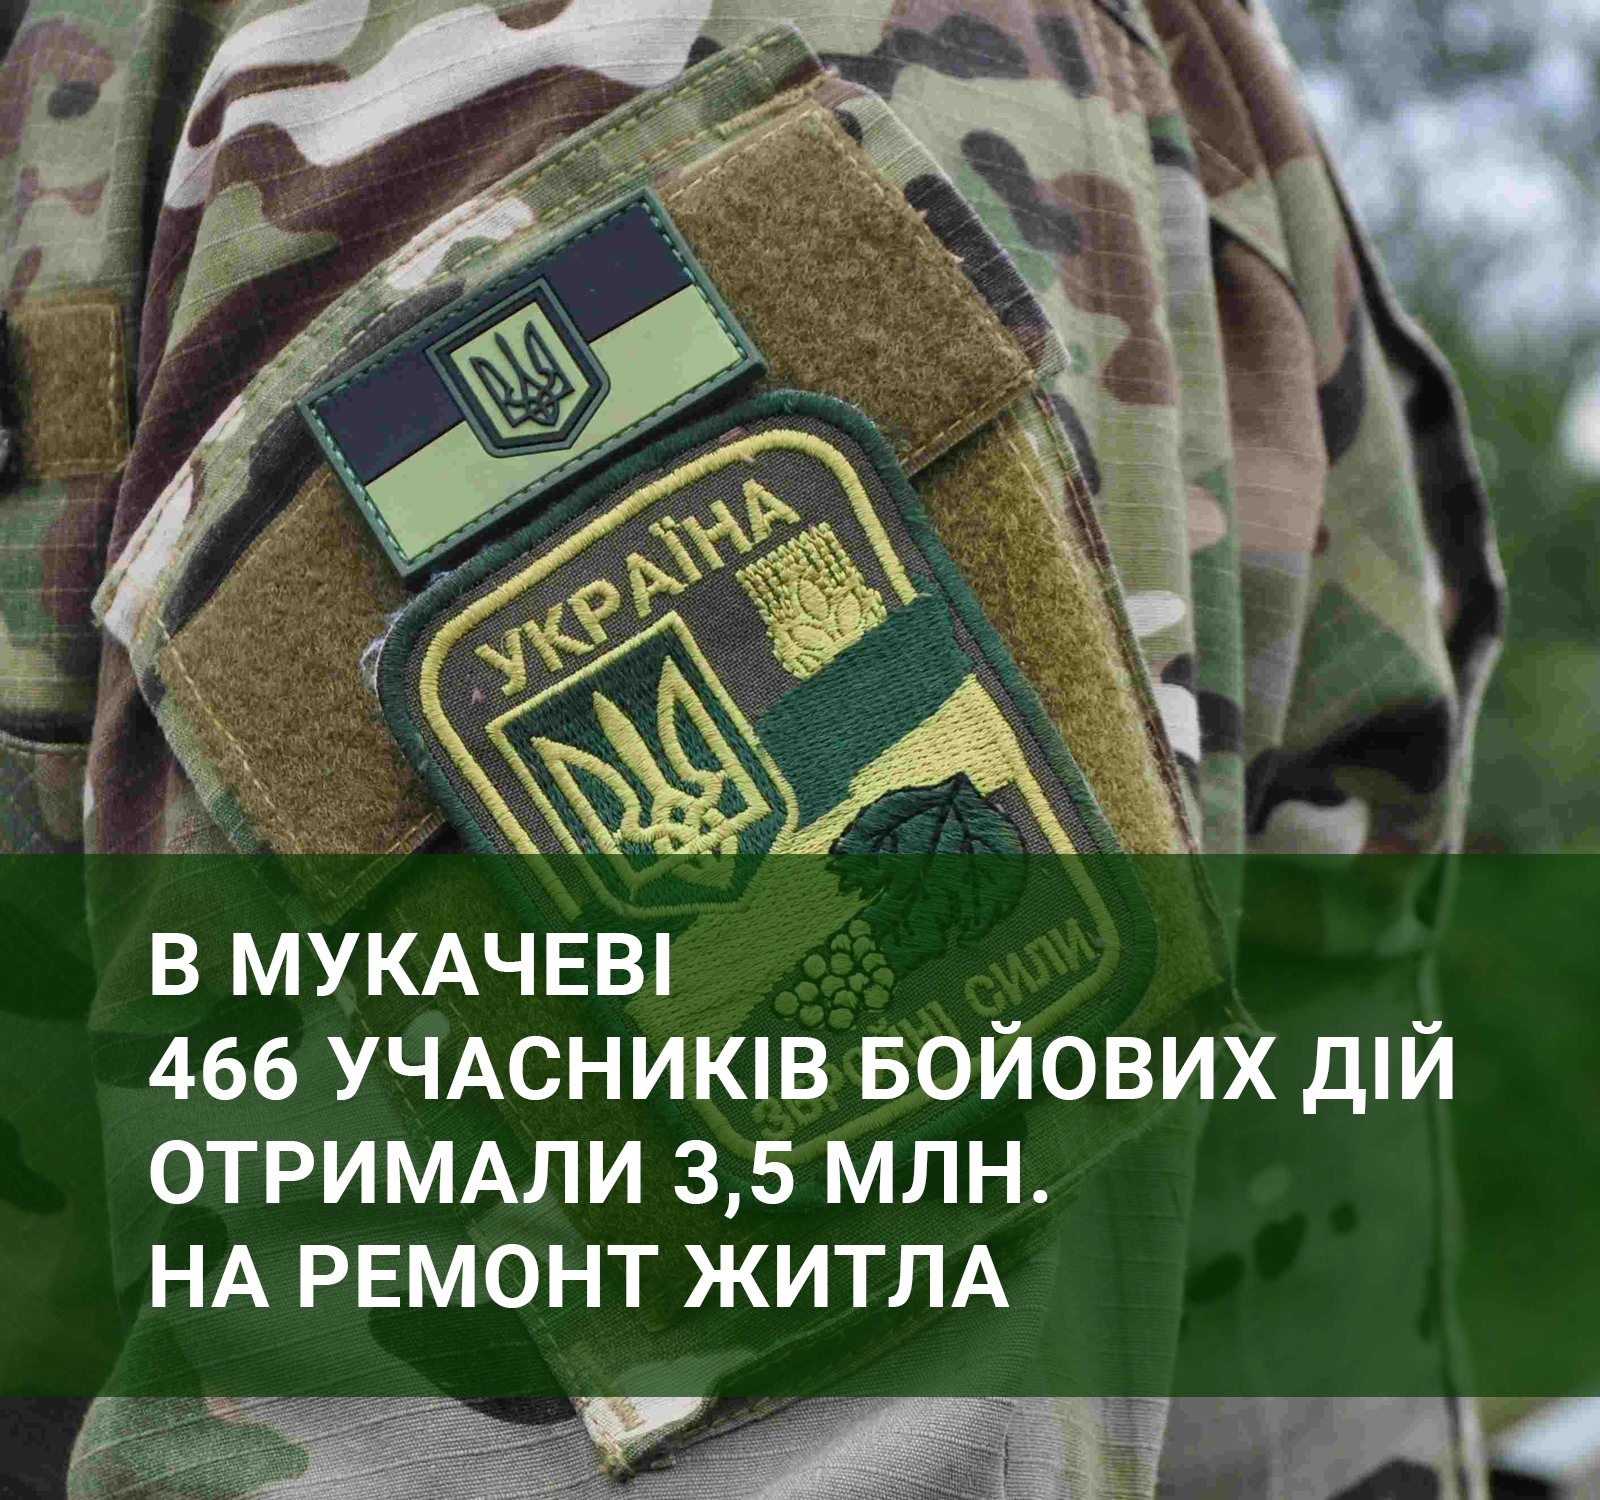 У Мукачеві 466 учасників бойових дій отримали 3,5 млн грн на ремонт житла